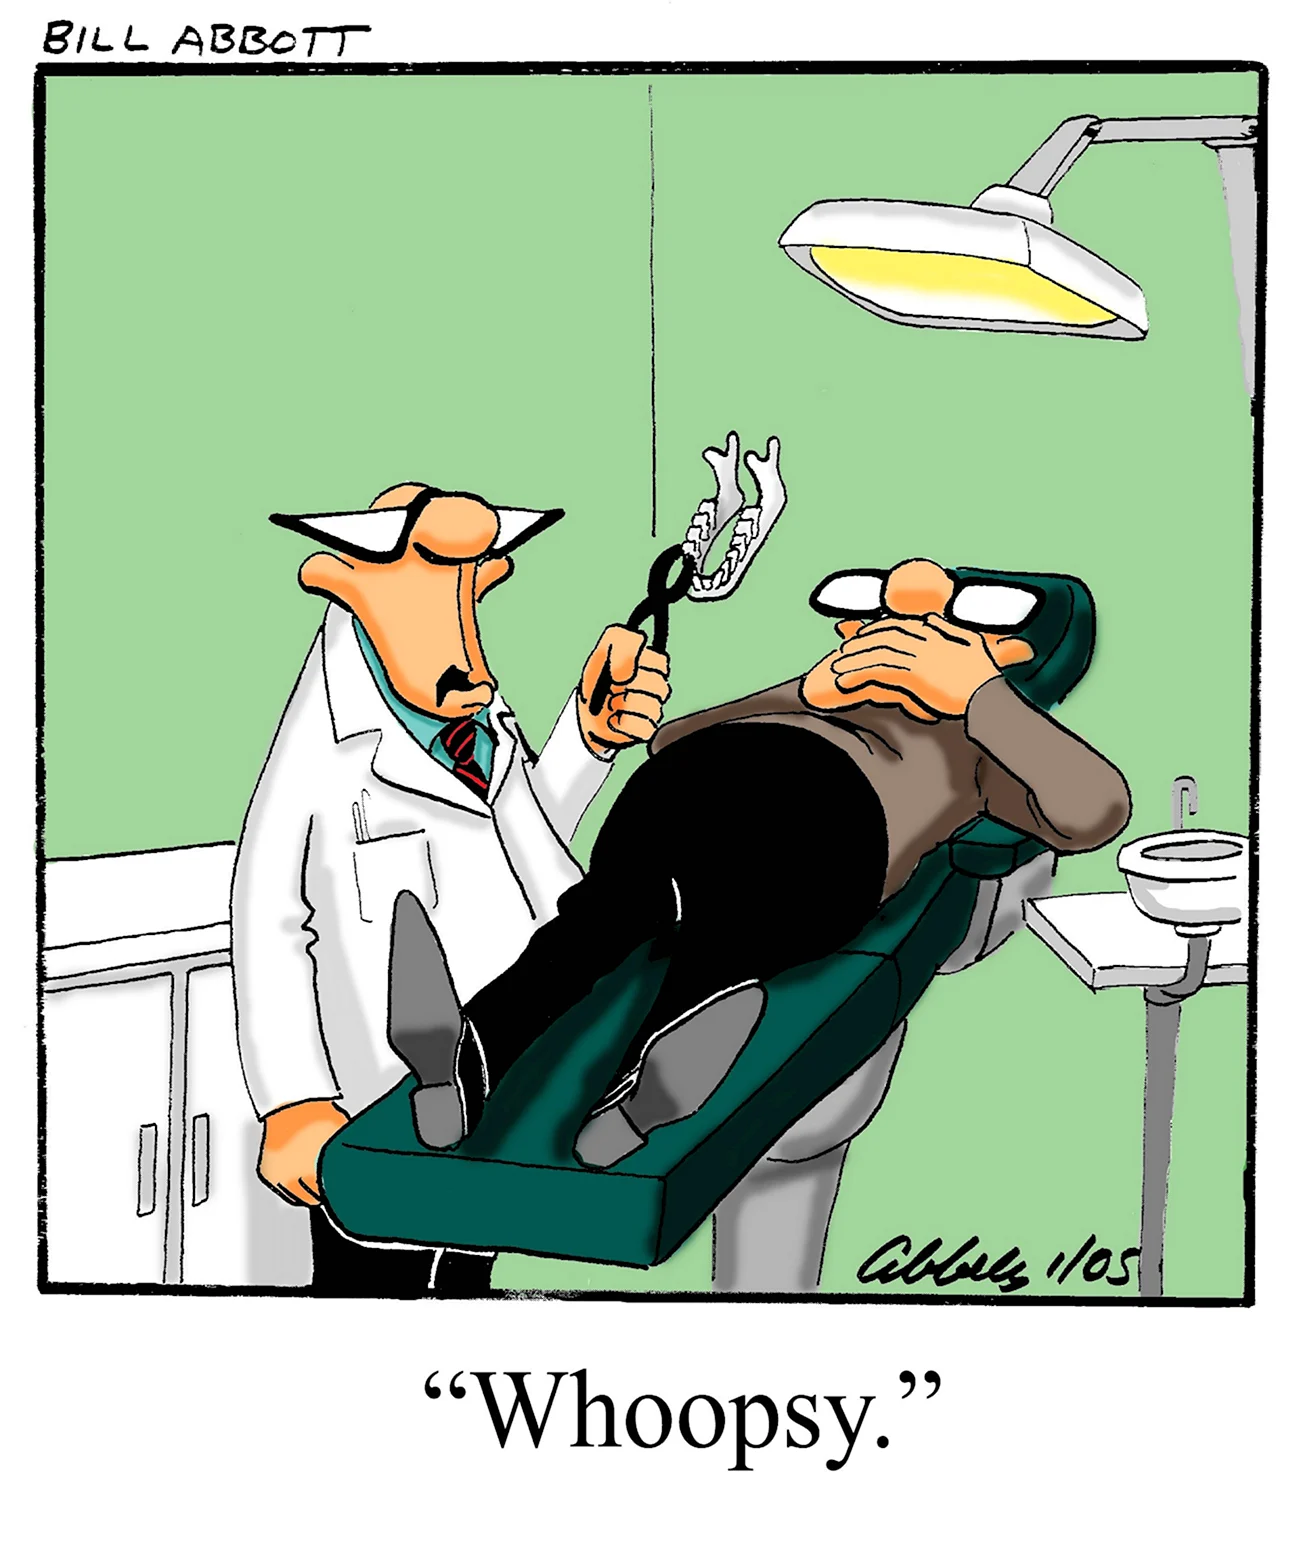 Стоматологические шутки. Прикольная картинка